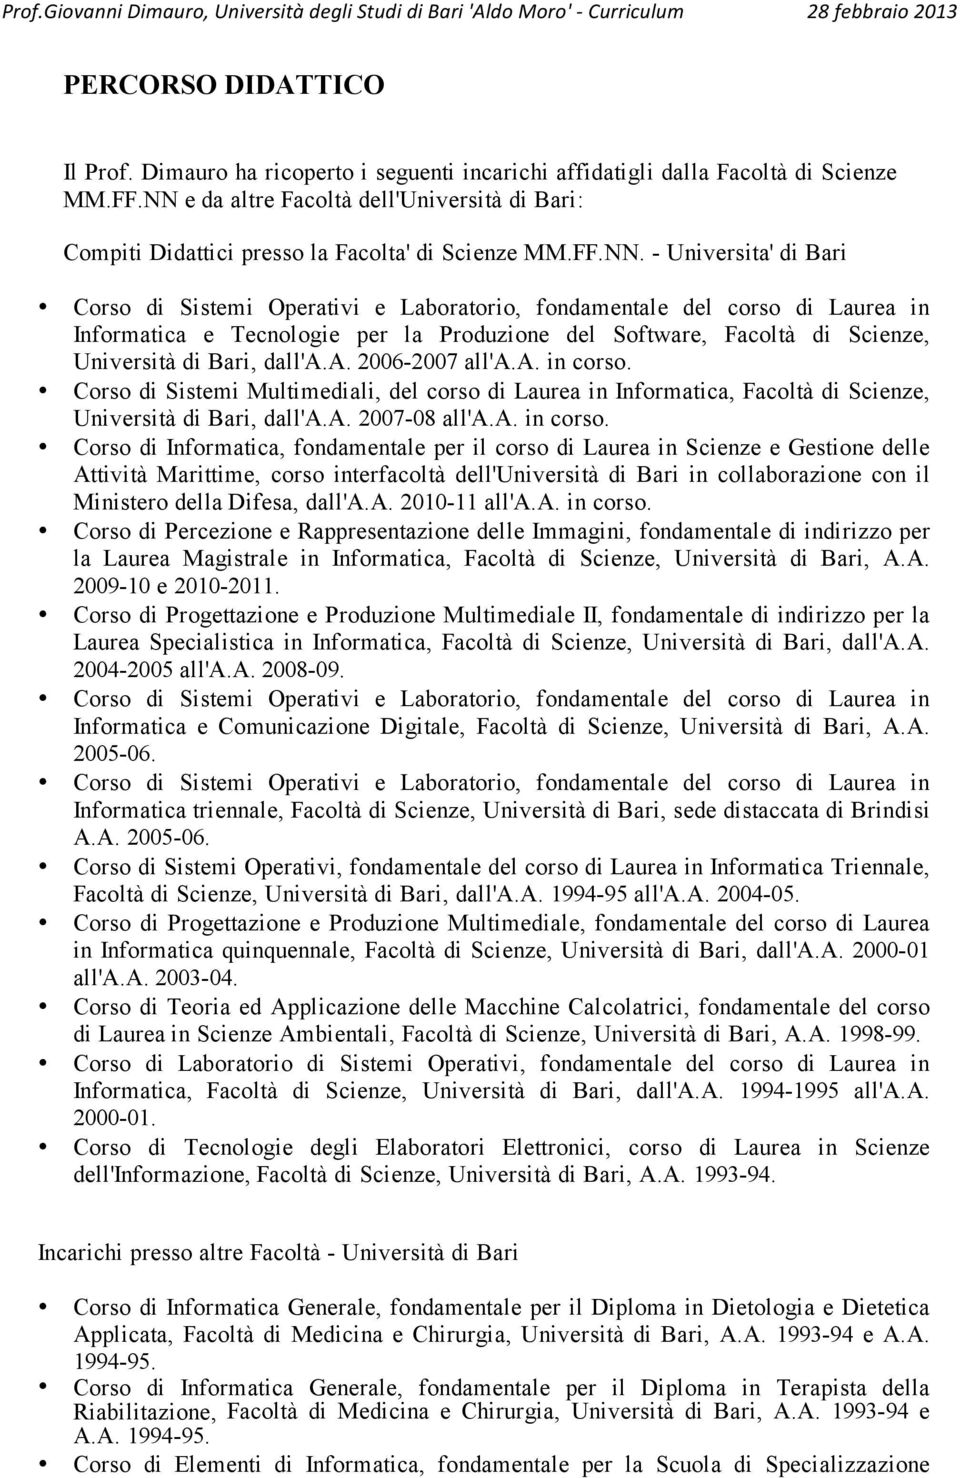 Laurea in Informatica e Tecnologie per la Produzione del Software, Facoltà di Scienze, Università di Bari, dall'a.a. 2006-2007 all'a.a. in corso.